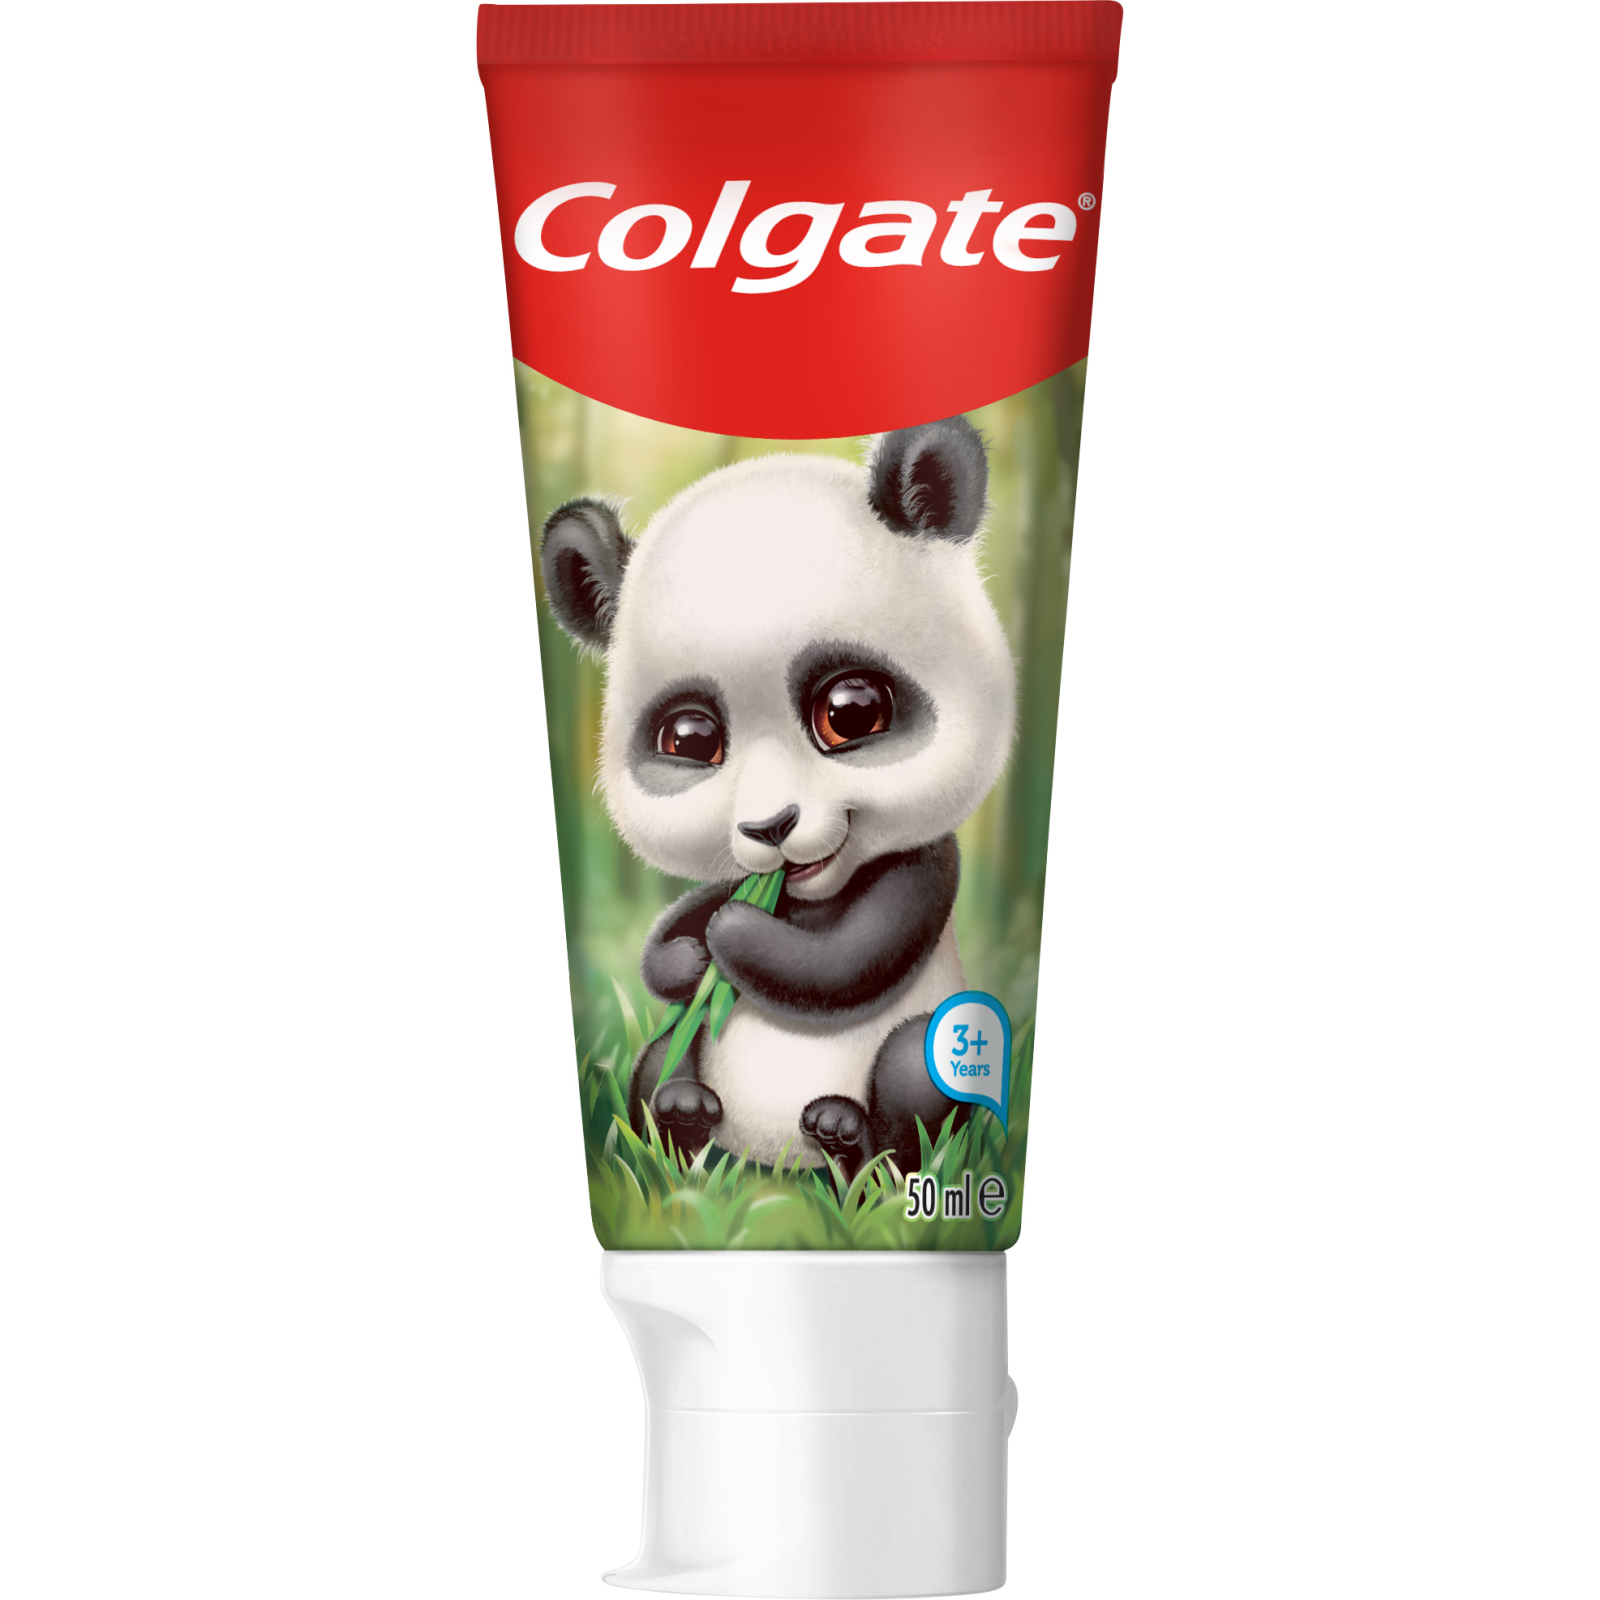 Дитяча зубна паста Colgate від 3-х років Панда 50 мл (2142000000005)